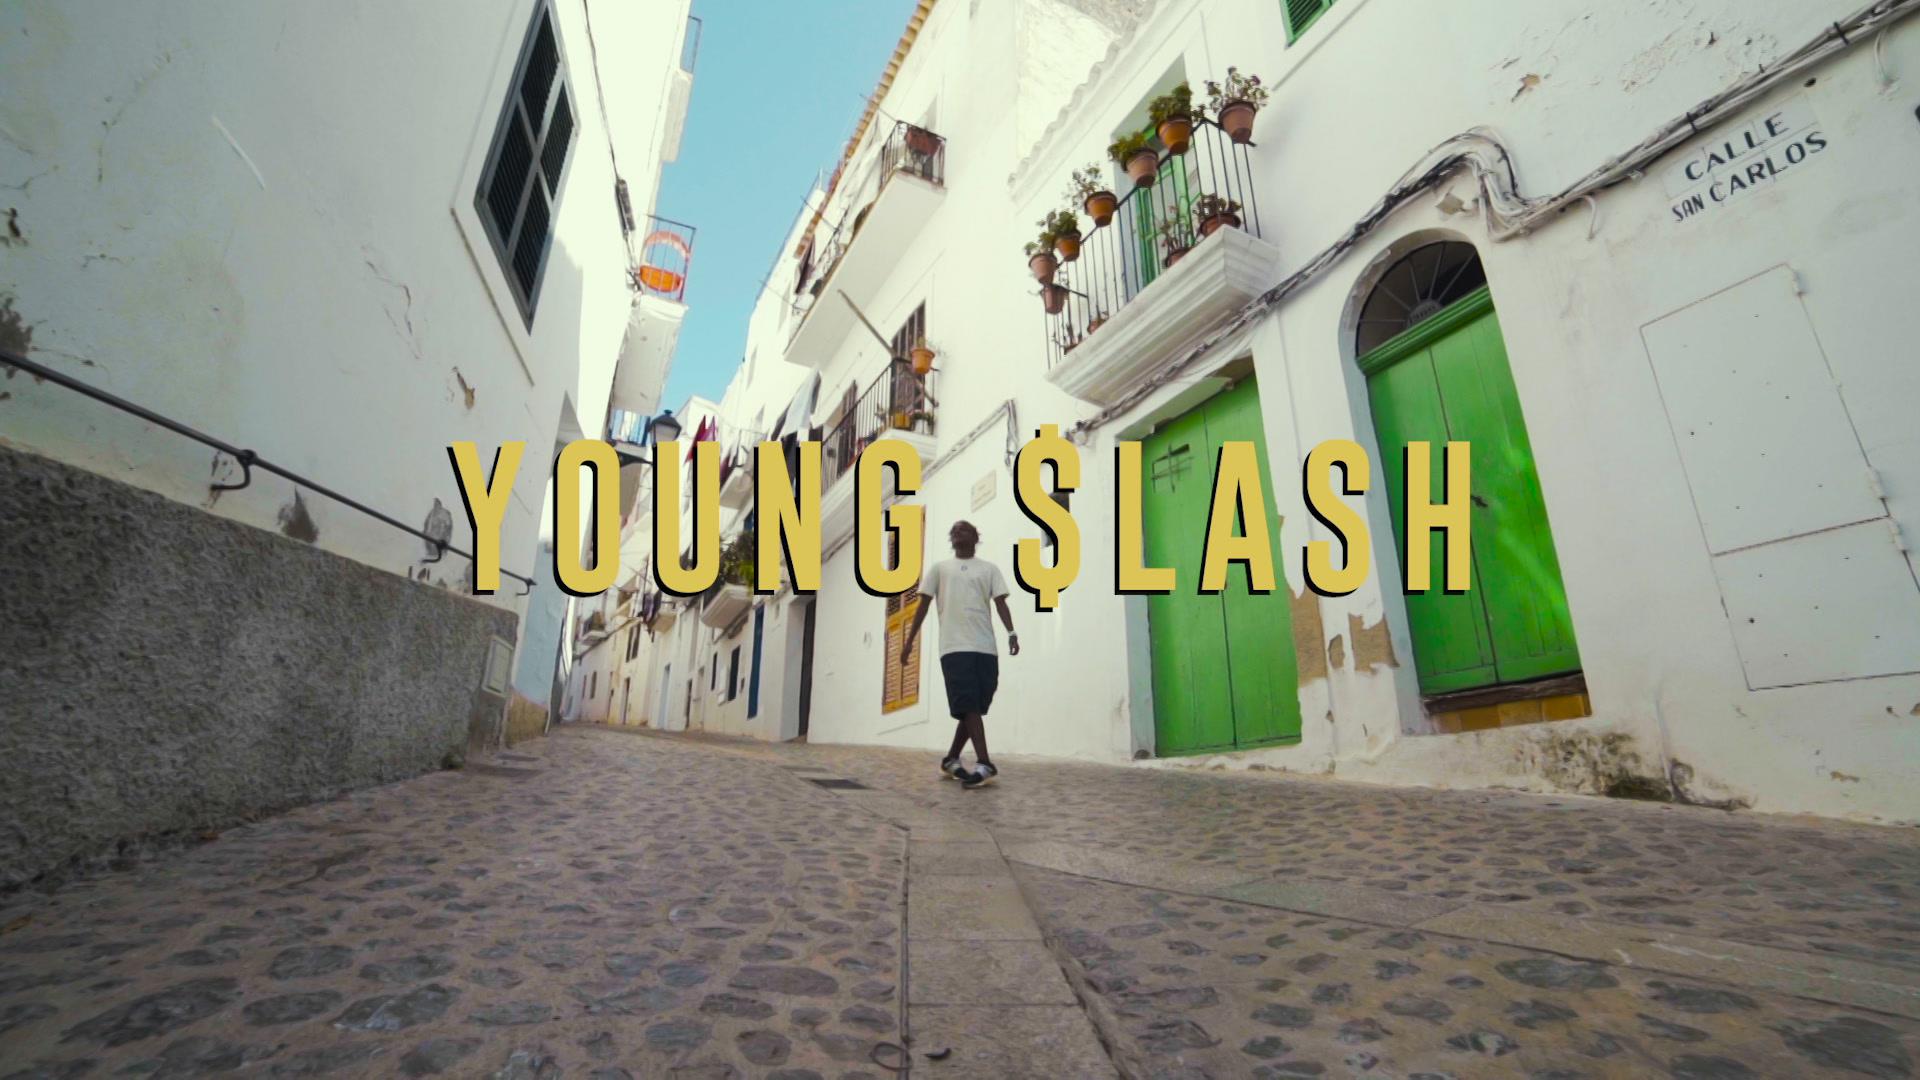 Young Slash - Ricco e povero (Trailer)